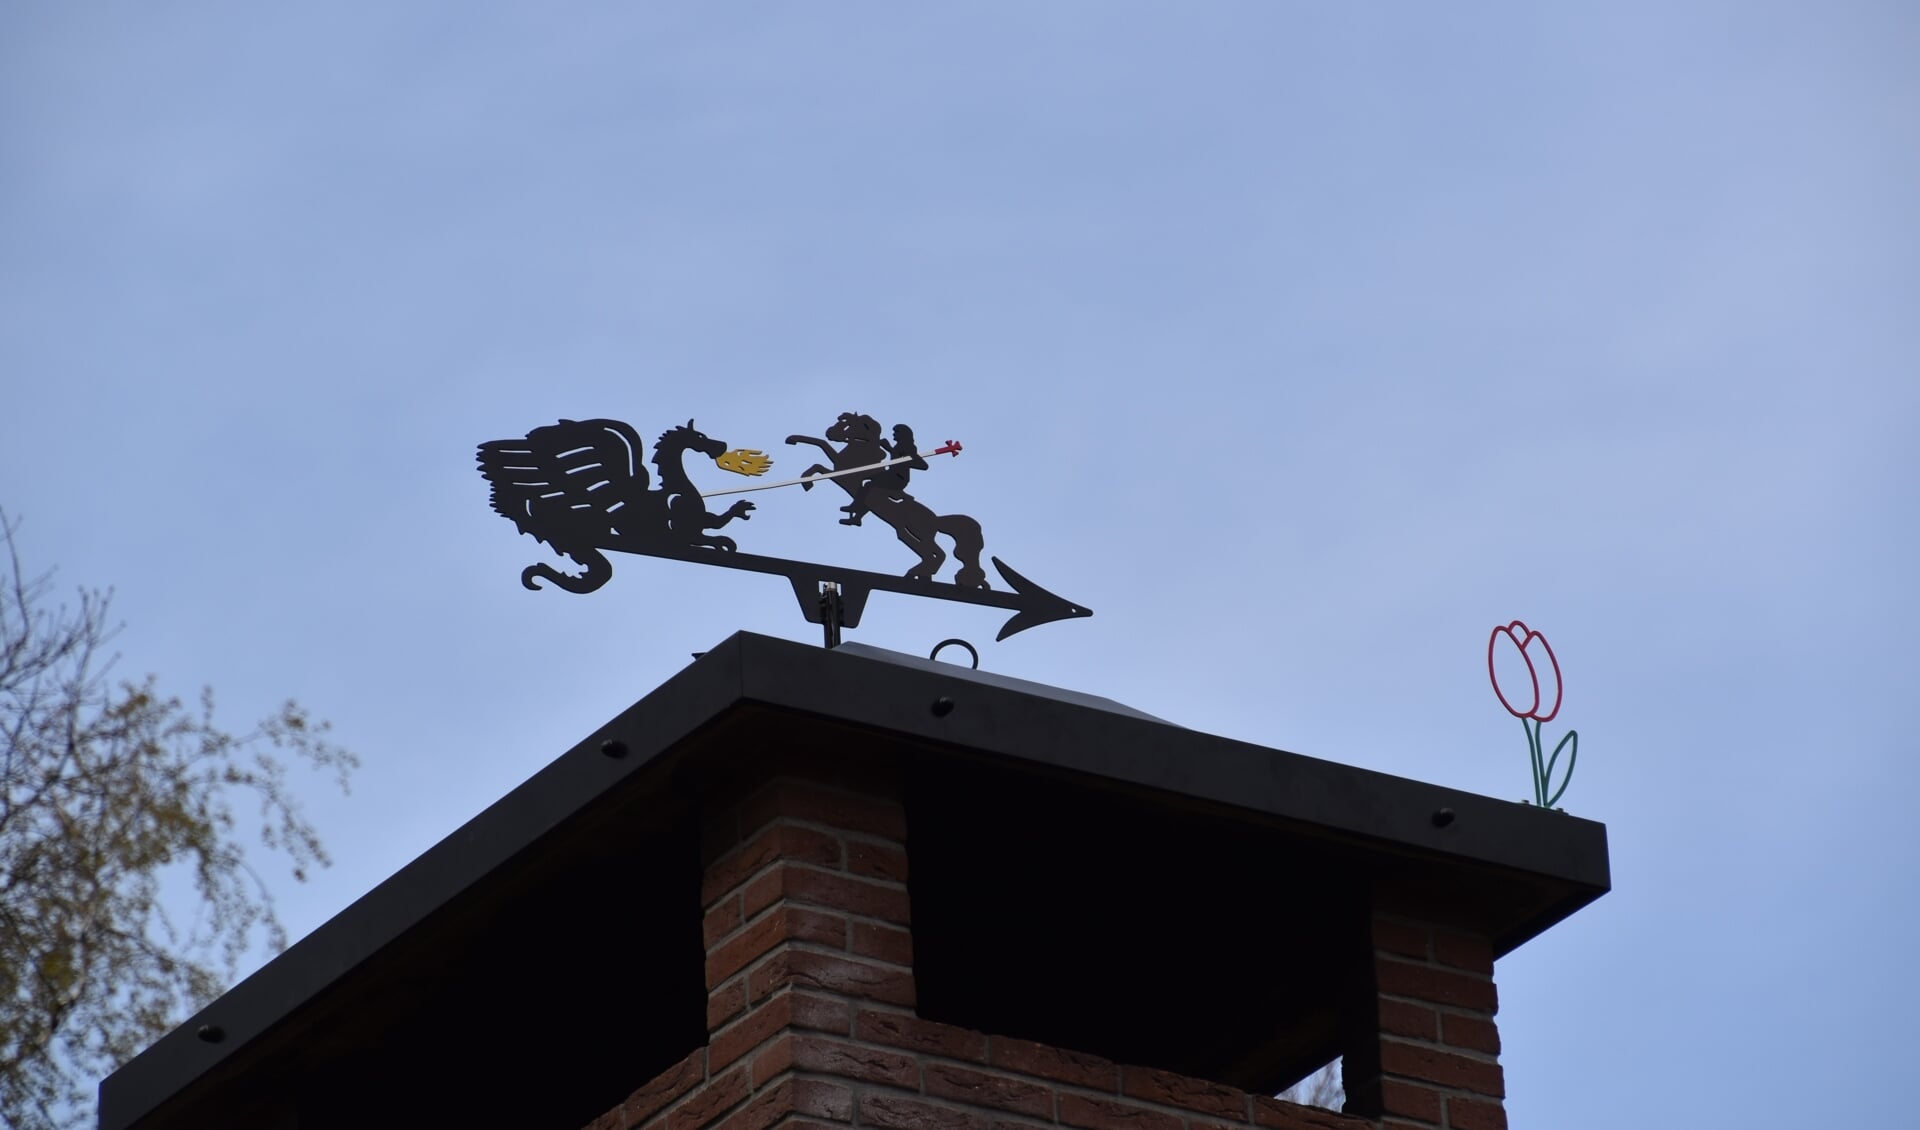 Sint Joris en de draak als windwijzer boven op de nieuwe schoorsteenkap van Scouting Pieter Maritz